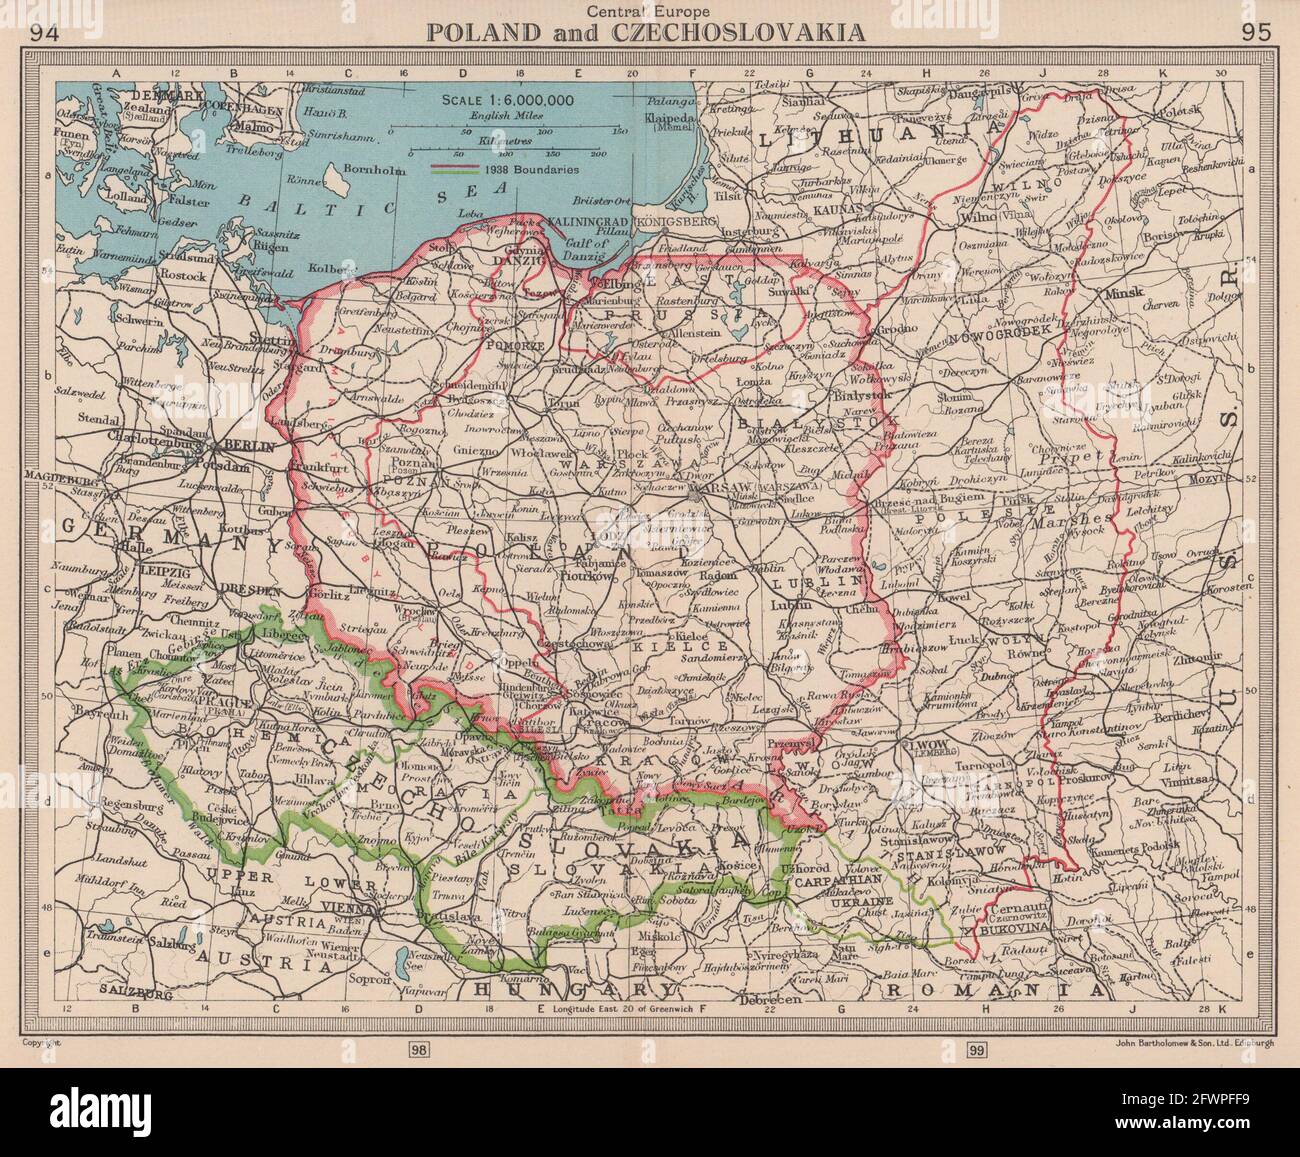 Poland & Czechoslovakia. Showing 1938 & 1945 borders. BARTHOLOMEW 1949 old map Stock Photo